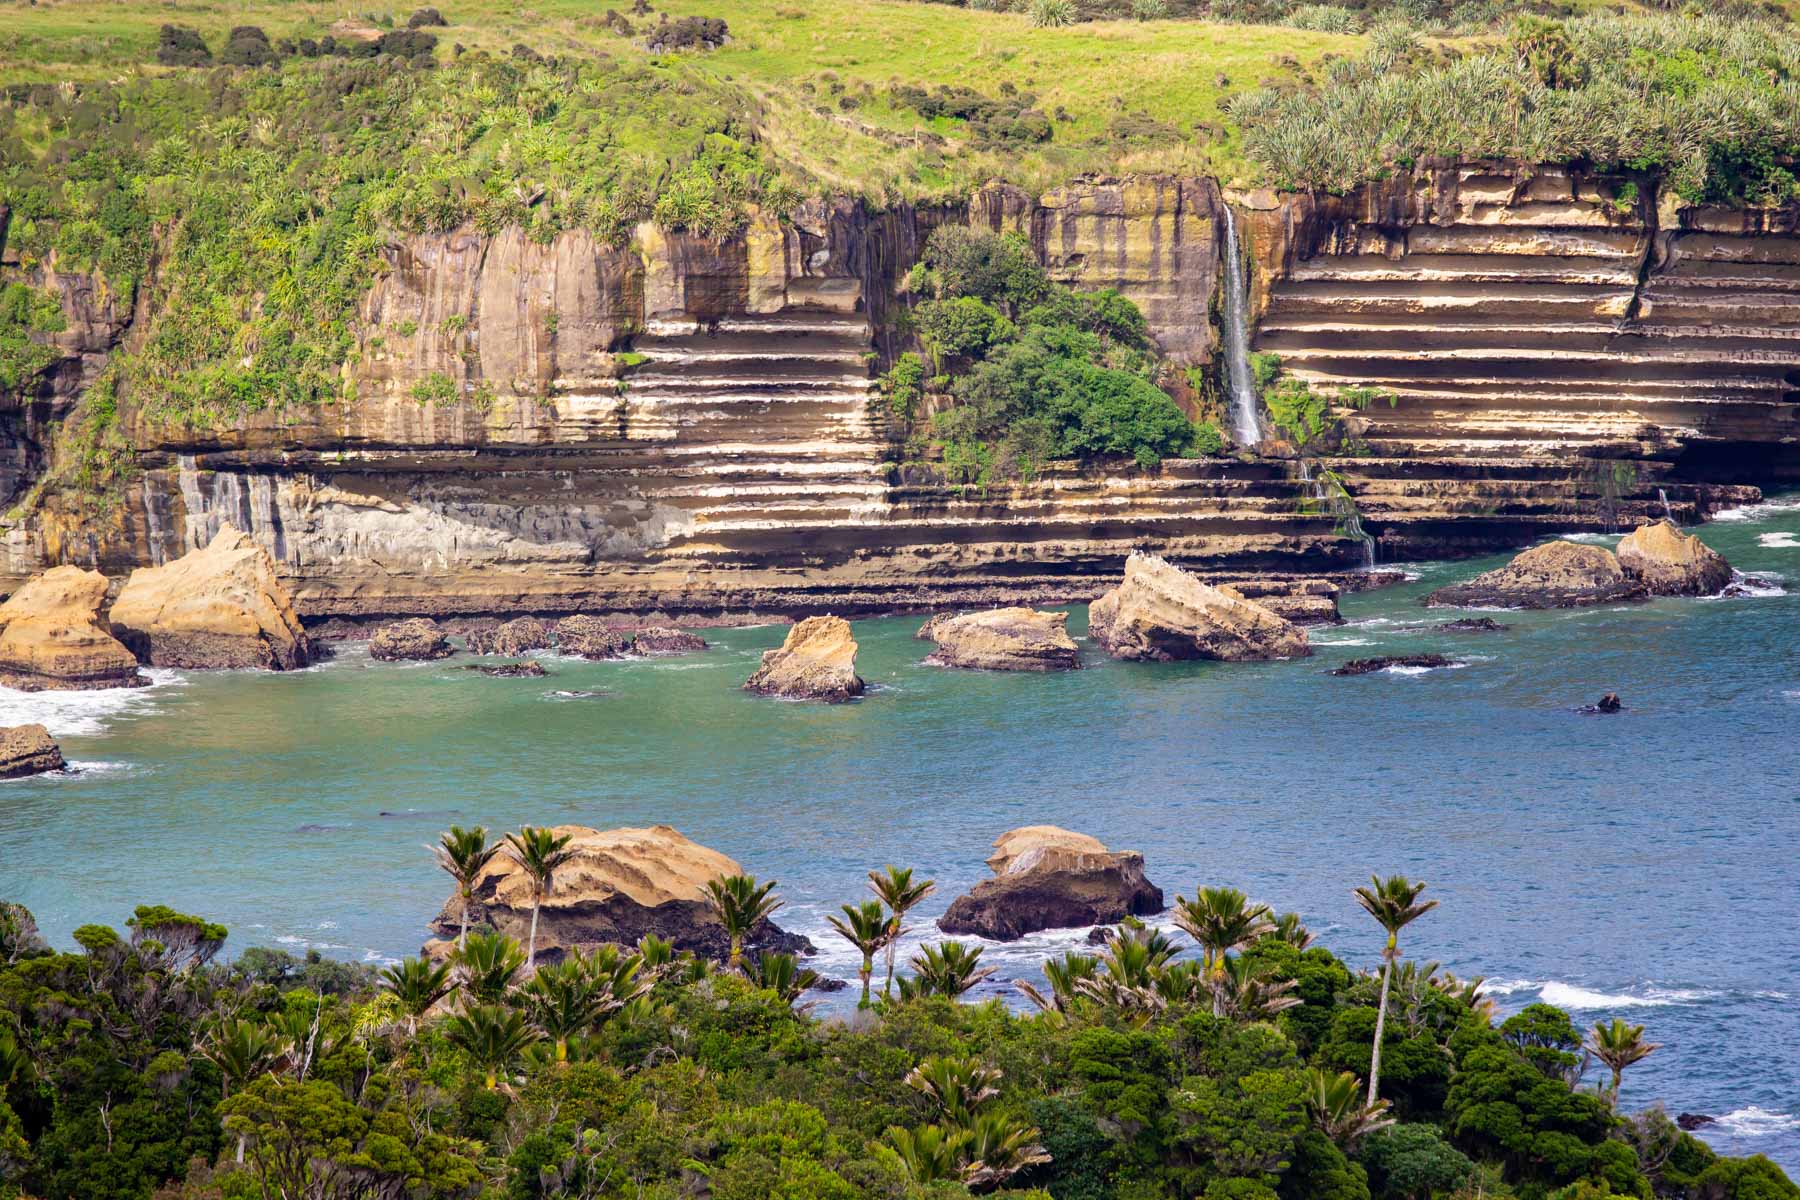 Une cascade coule le long d’une falaise aux strates horizontales tandis que des vagues se brisent sur des îlots rocheux.